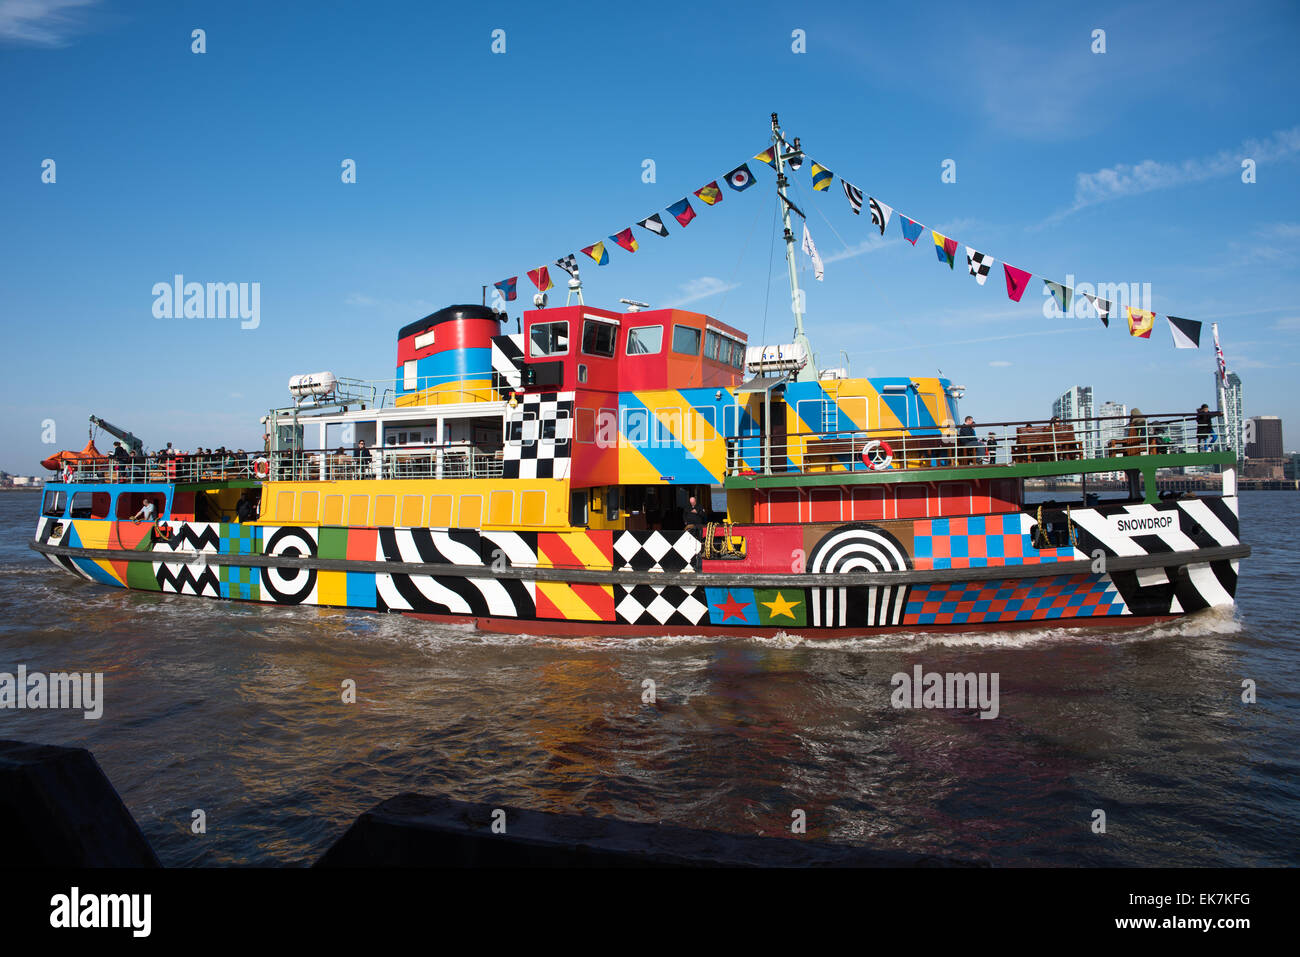 Fluß Mersey Fähre Dazzle Schiff. Entworfen von Sir Peter Blake, das Cover von Sgt. Pepper für The Beatles gestaltet Stockfoto